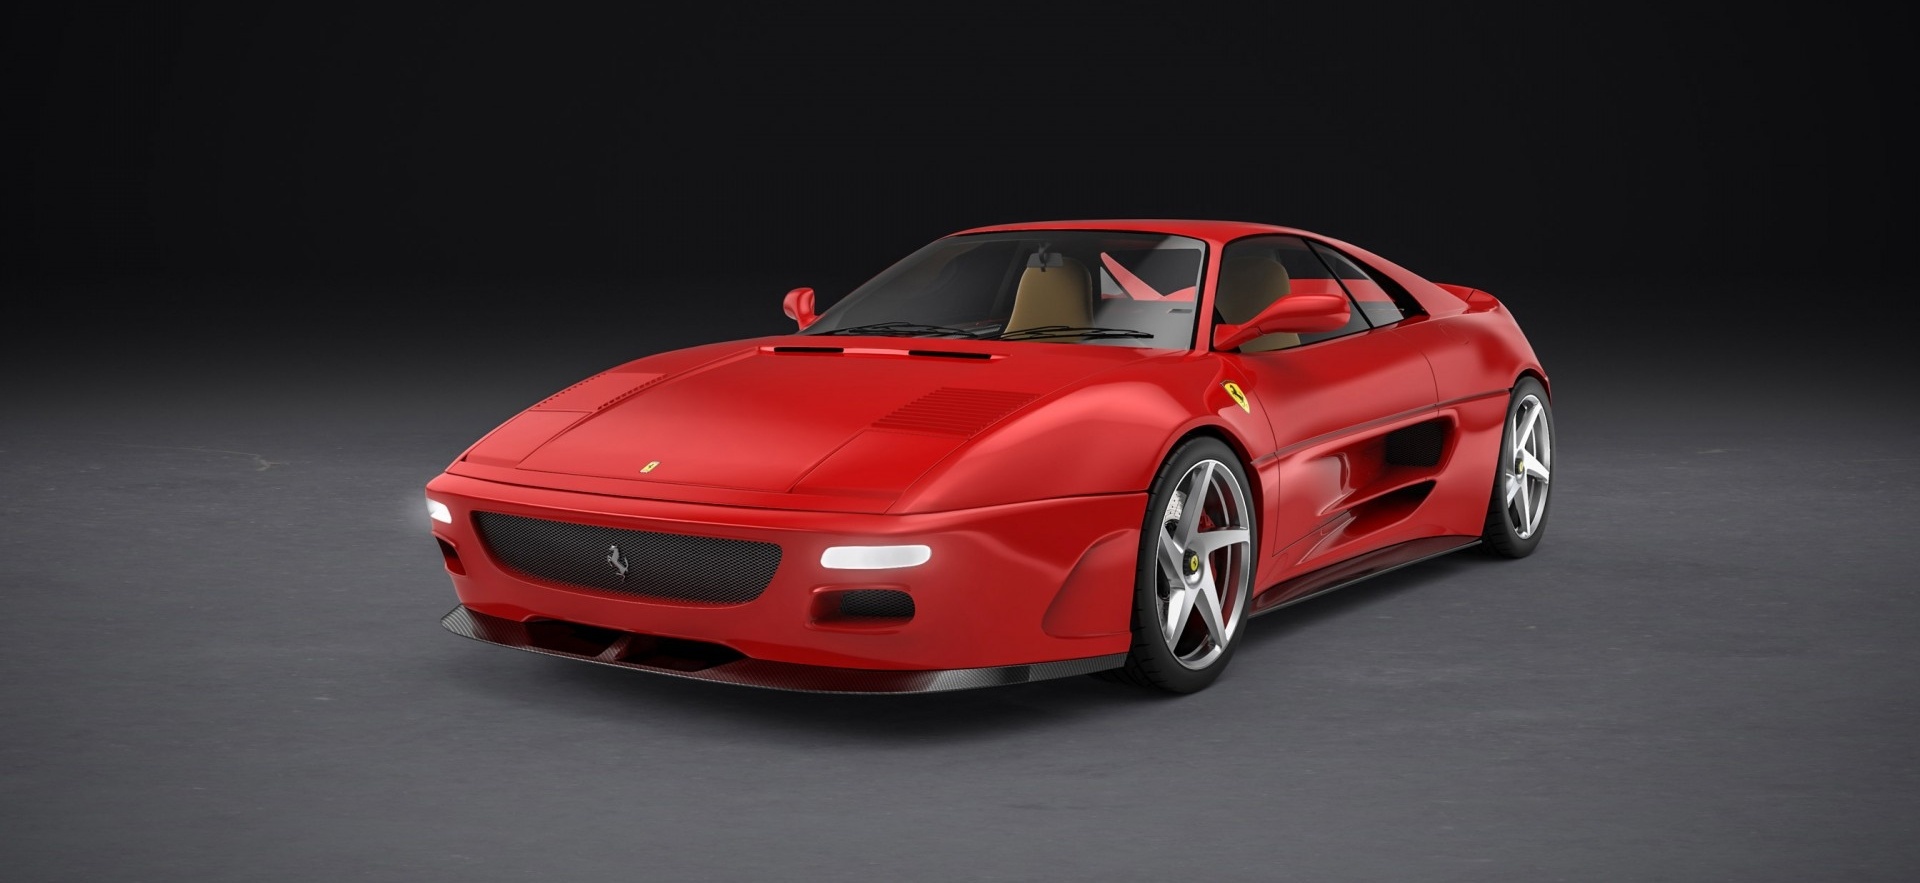 Este es el Ferrari 348 by Evoluto, con carrocería de fibra de carbono